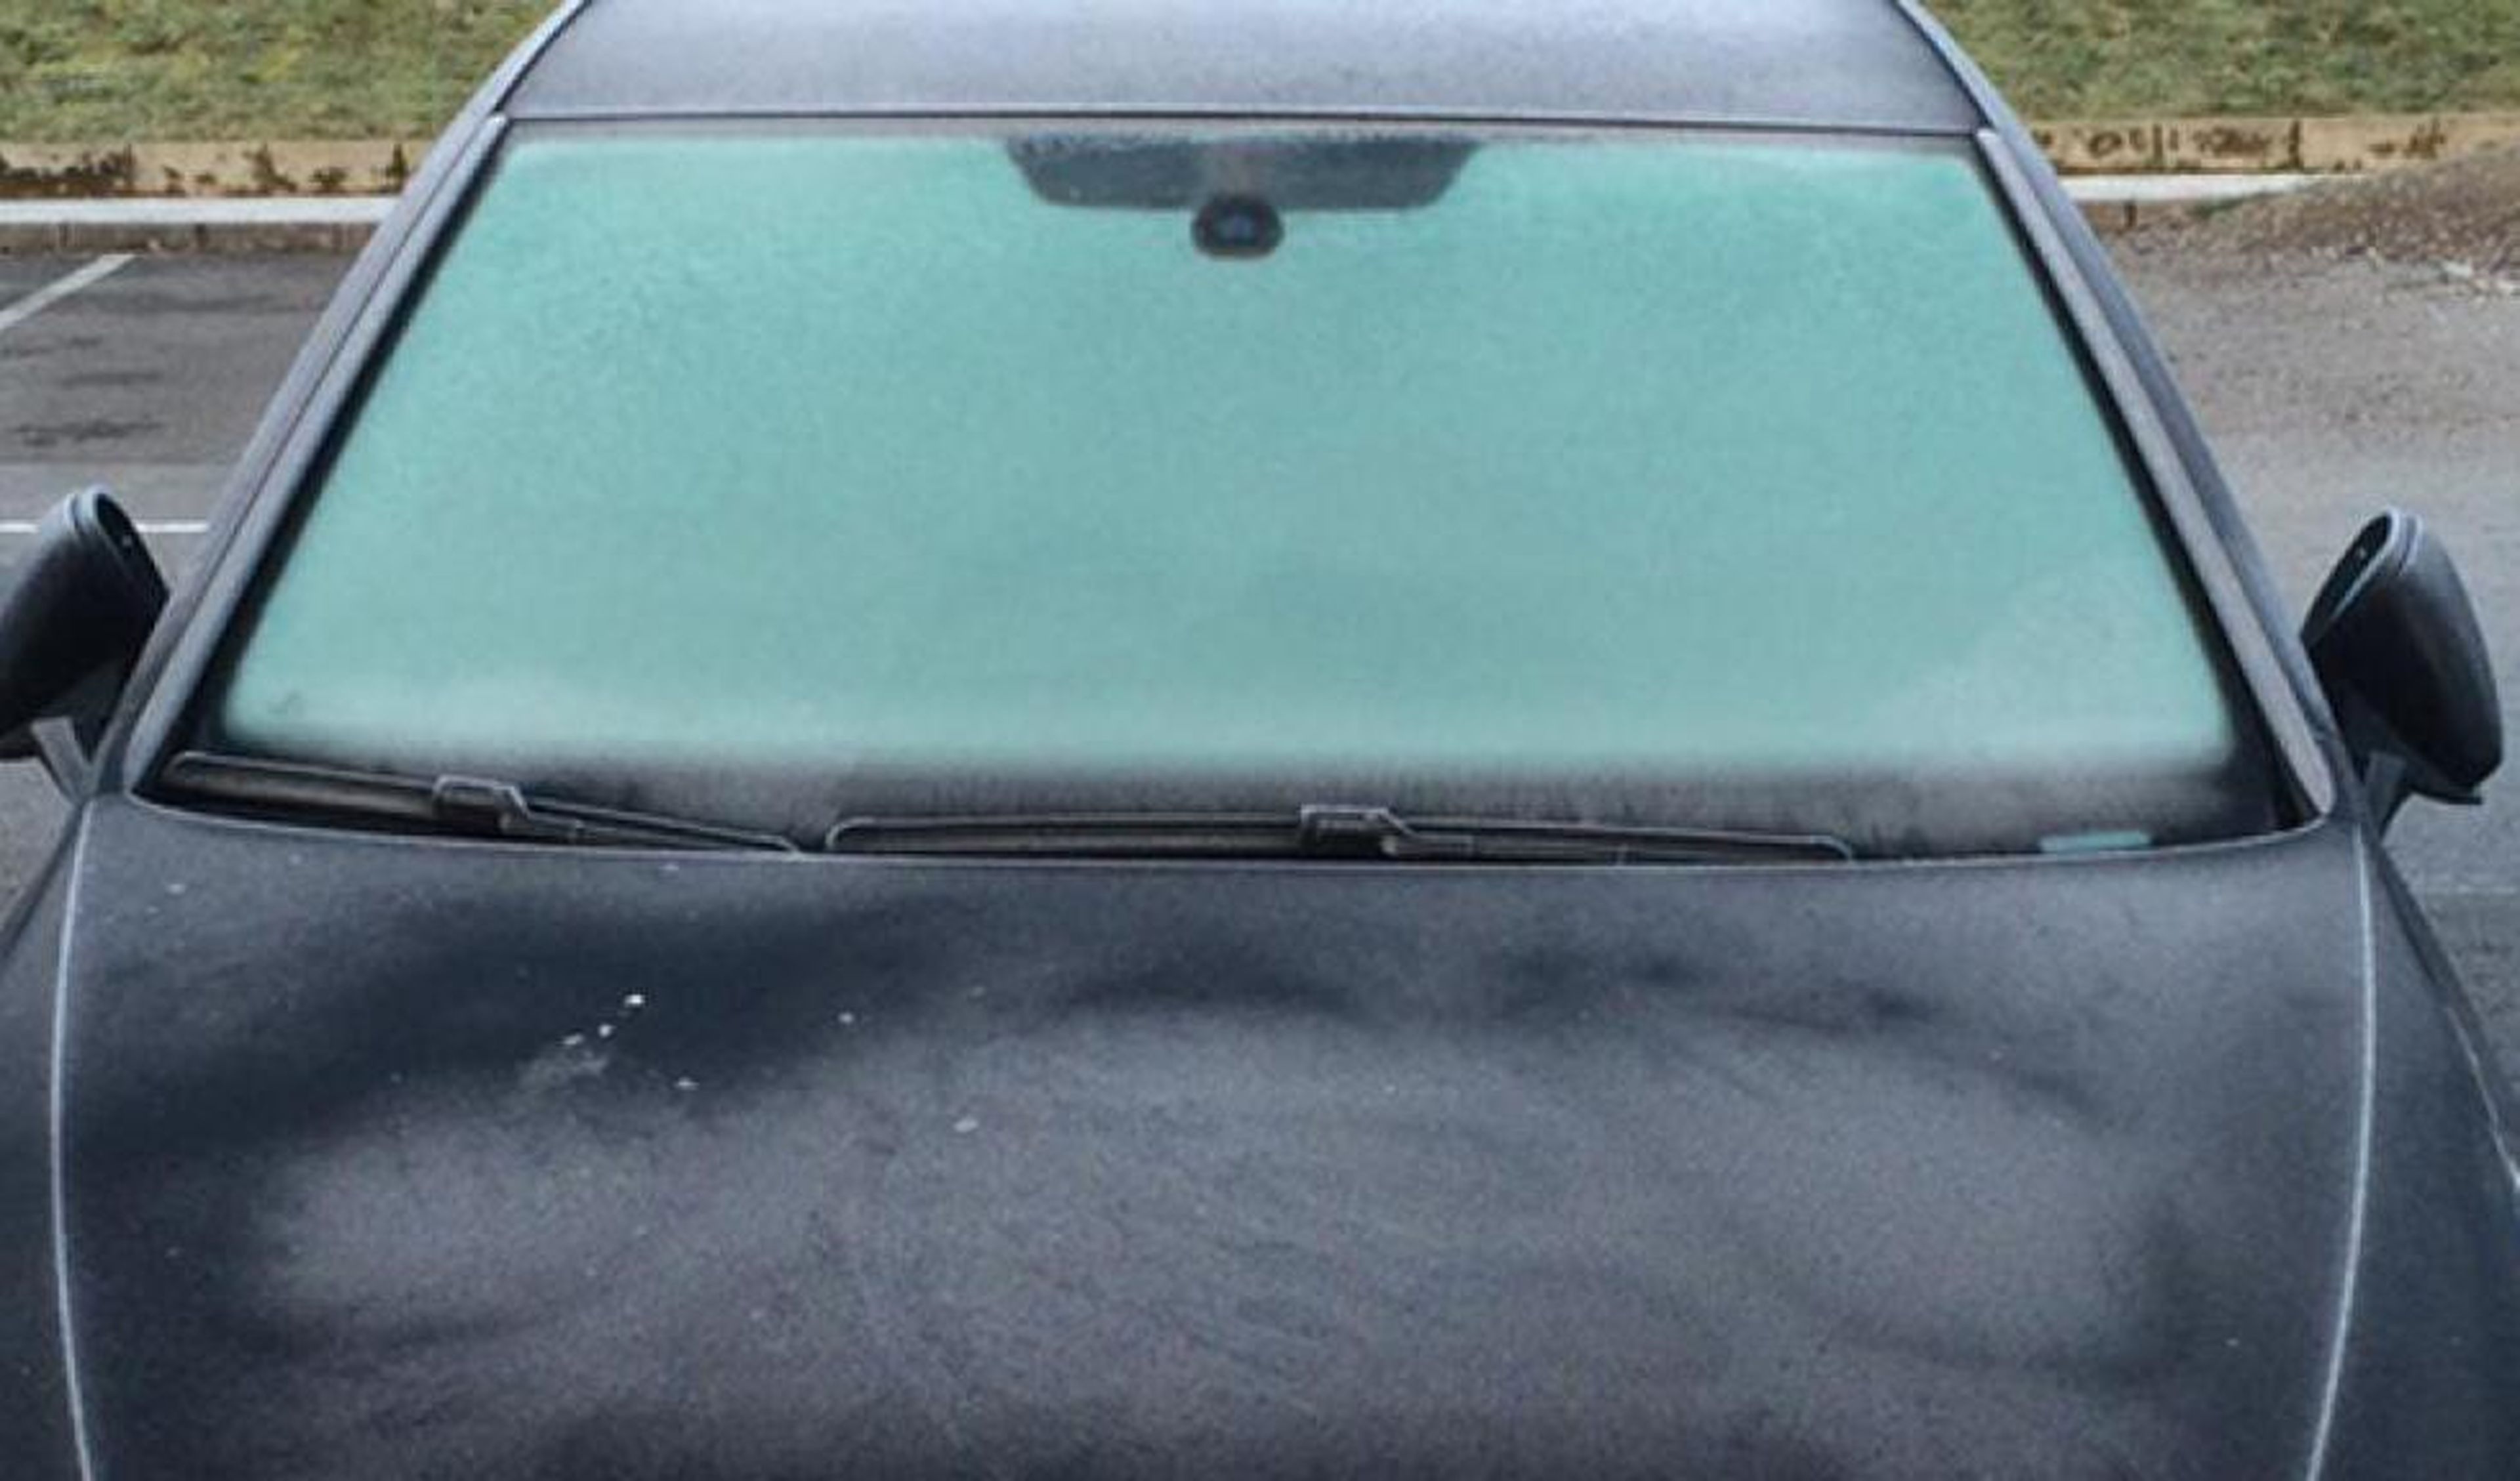 Rasqueta quita hielo para el parabrisas del coche